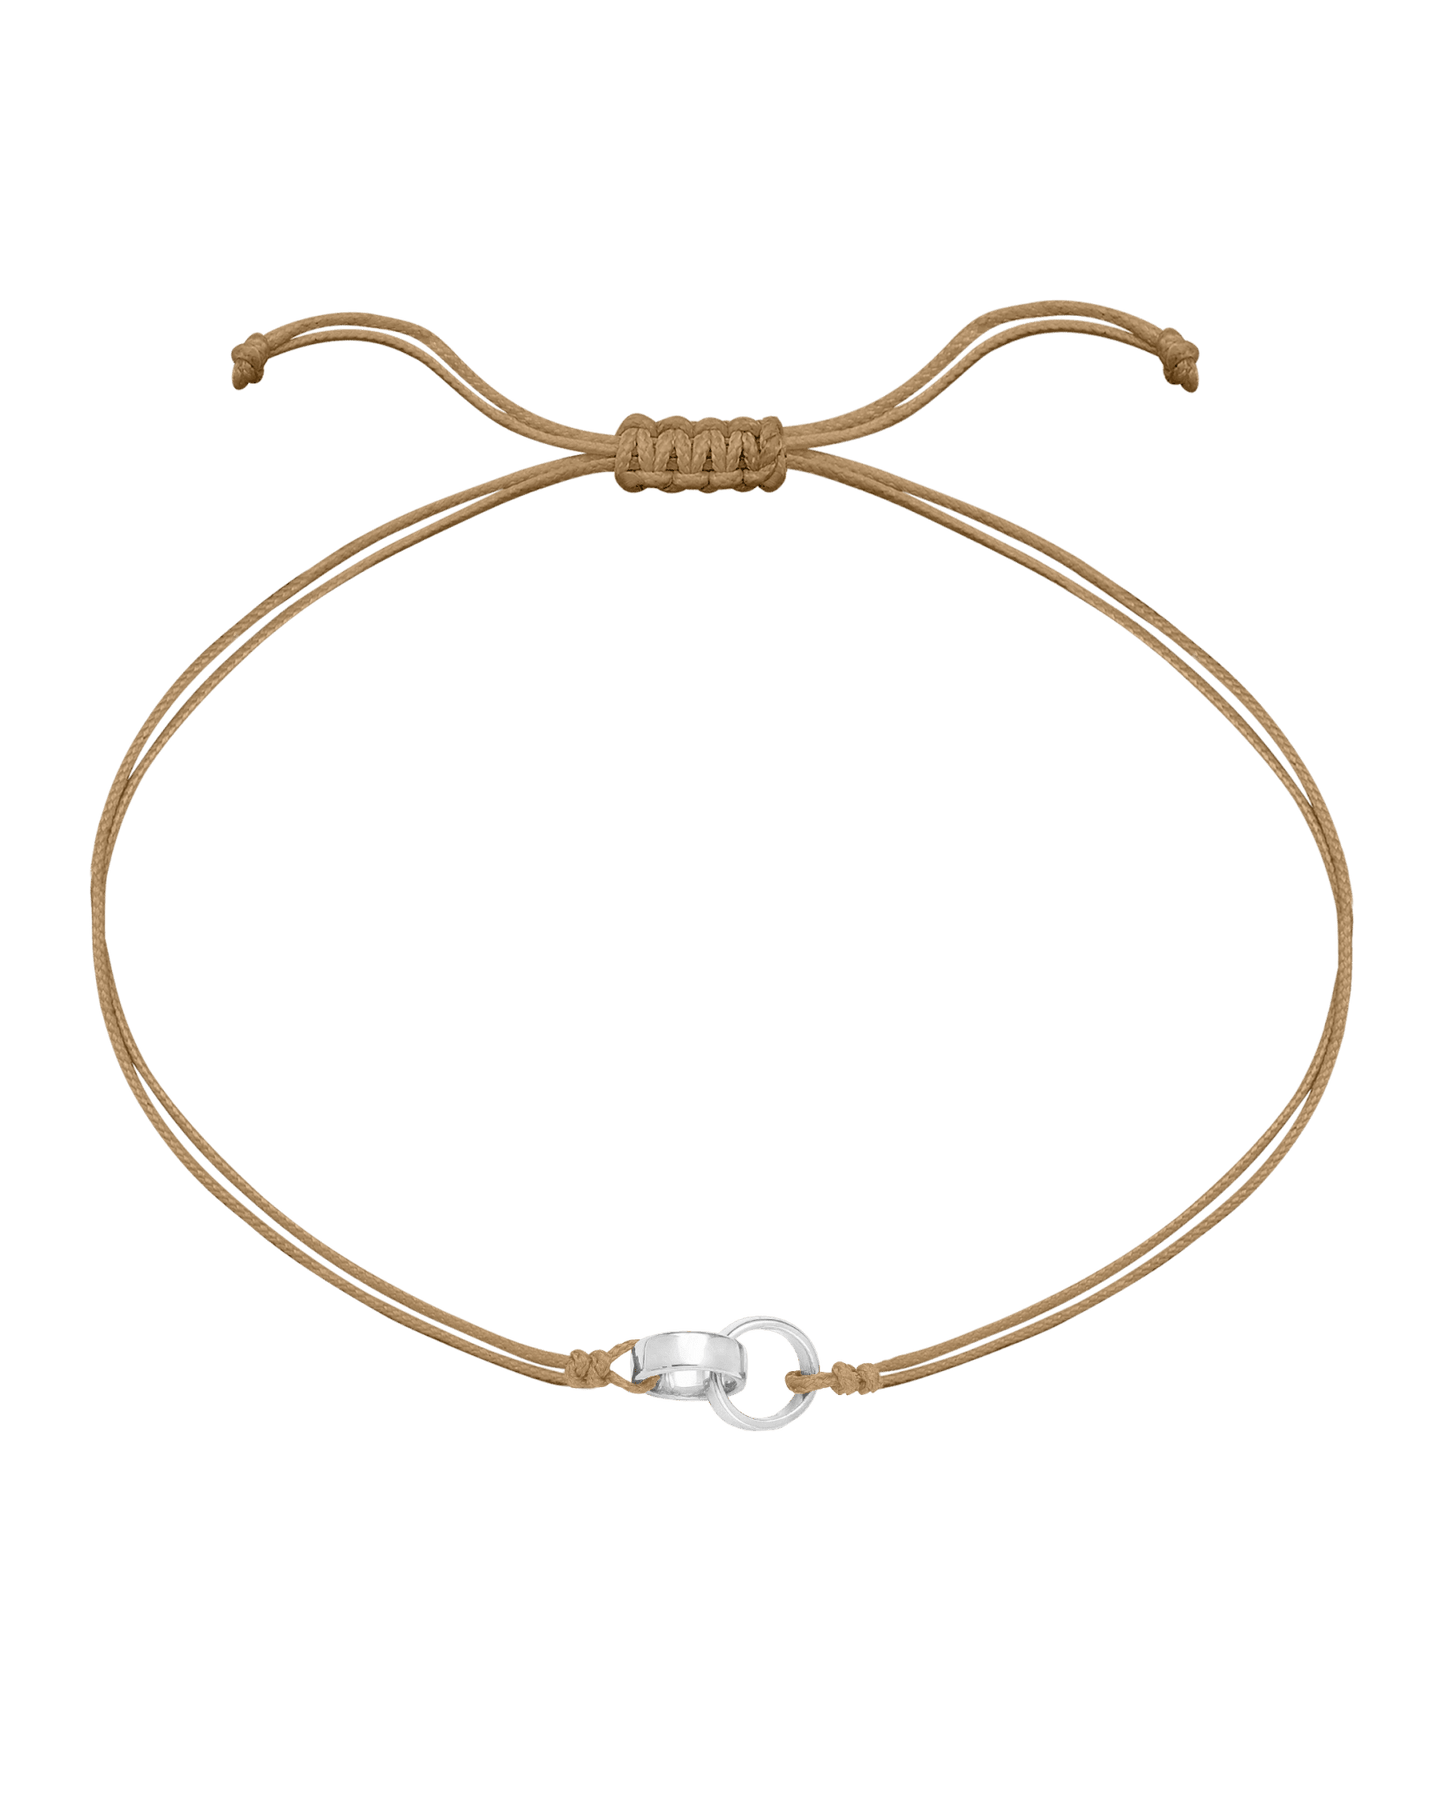 Engravable Links of Love - 925 Sterling Silver Bracelets magal-dev 2 Camel 